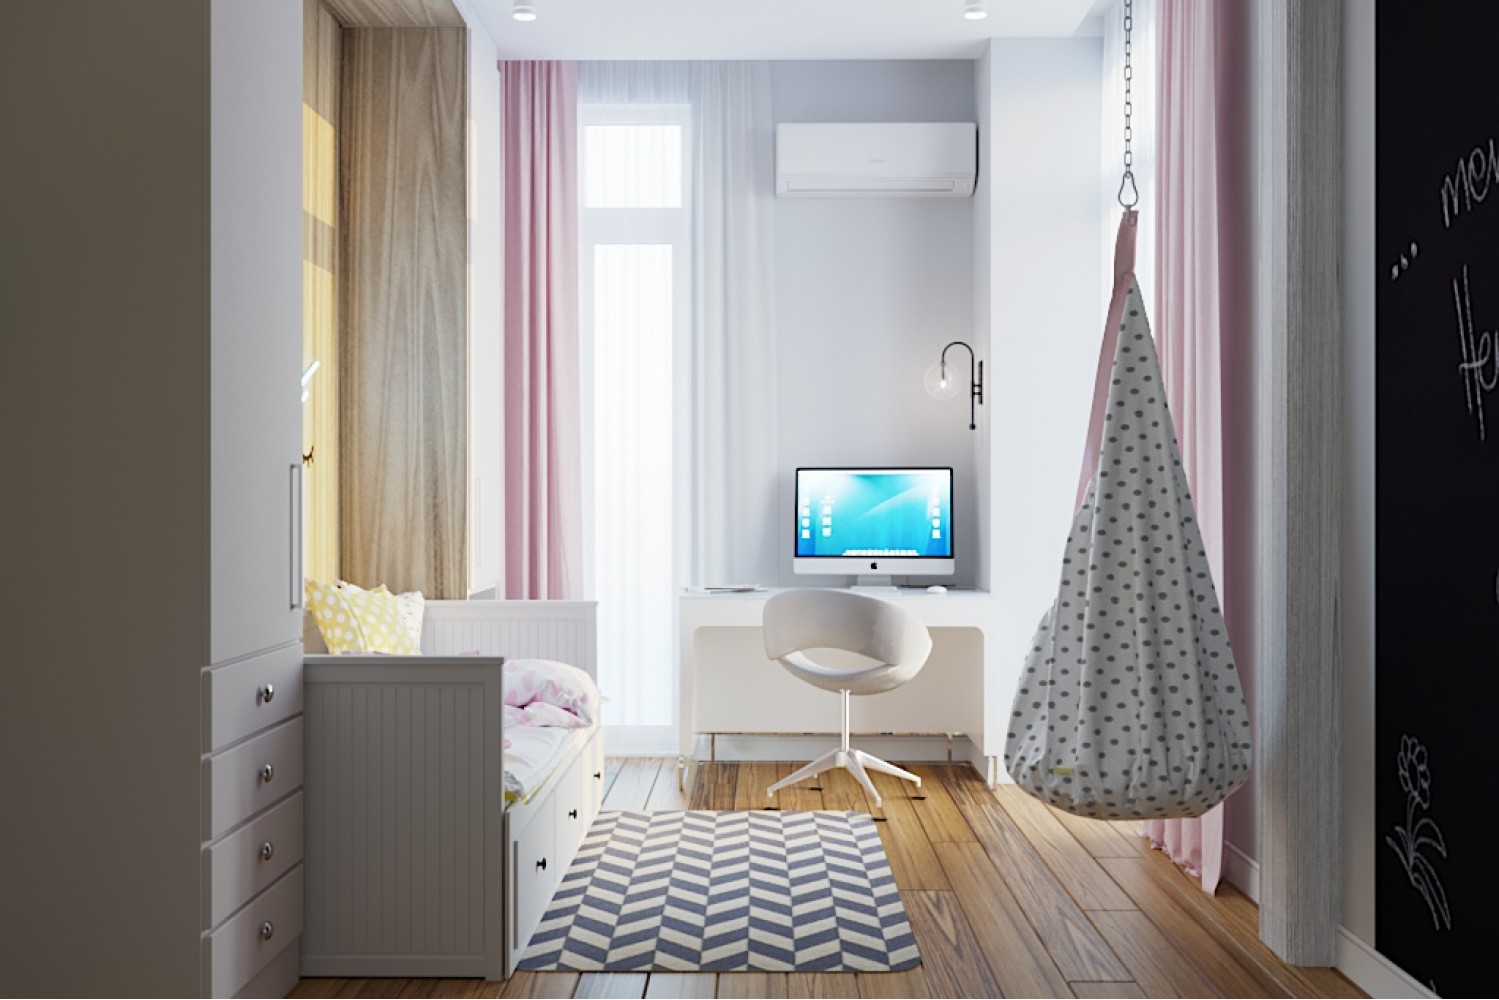 Детская-2 — Дизайн-проект 3-комнатной квартиры в Эко-стиле, ЖК Комфорт Таун, 77 м.кв — студия дизайна Redis&Co